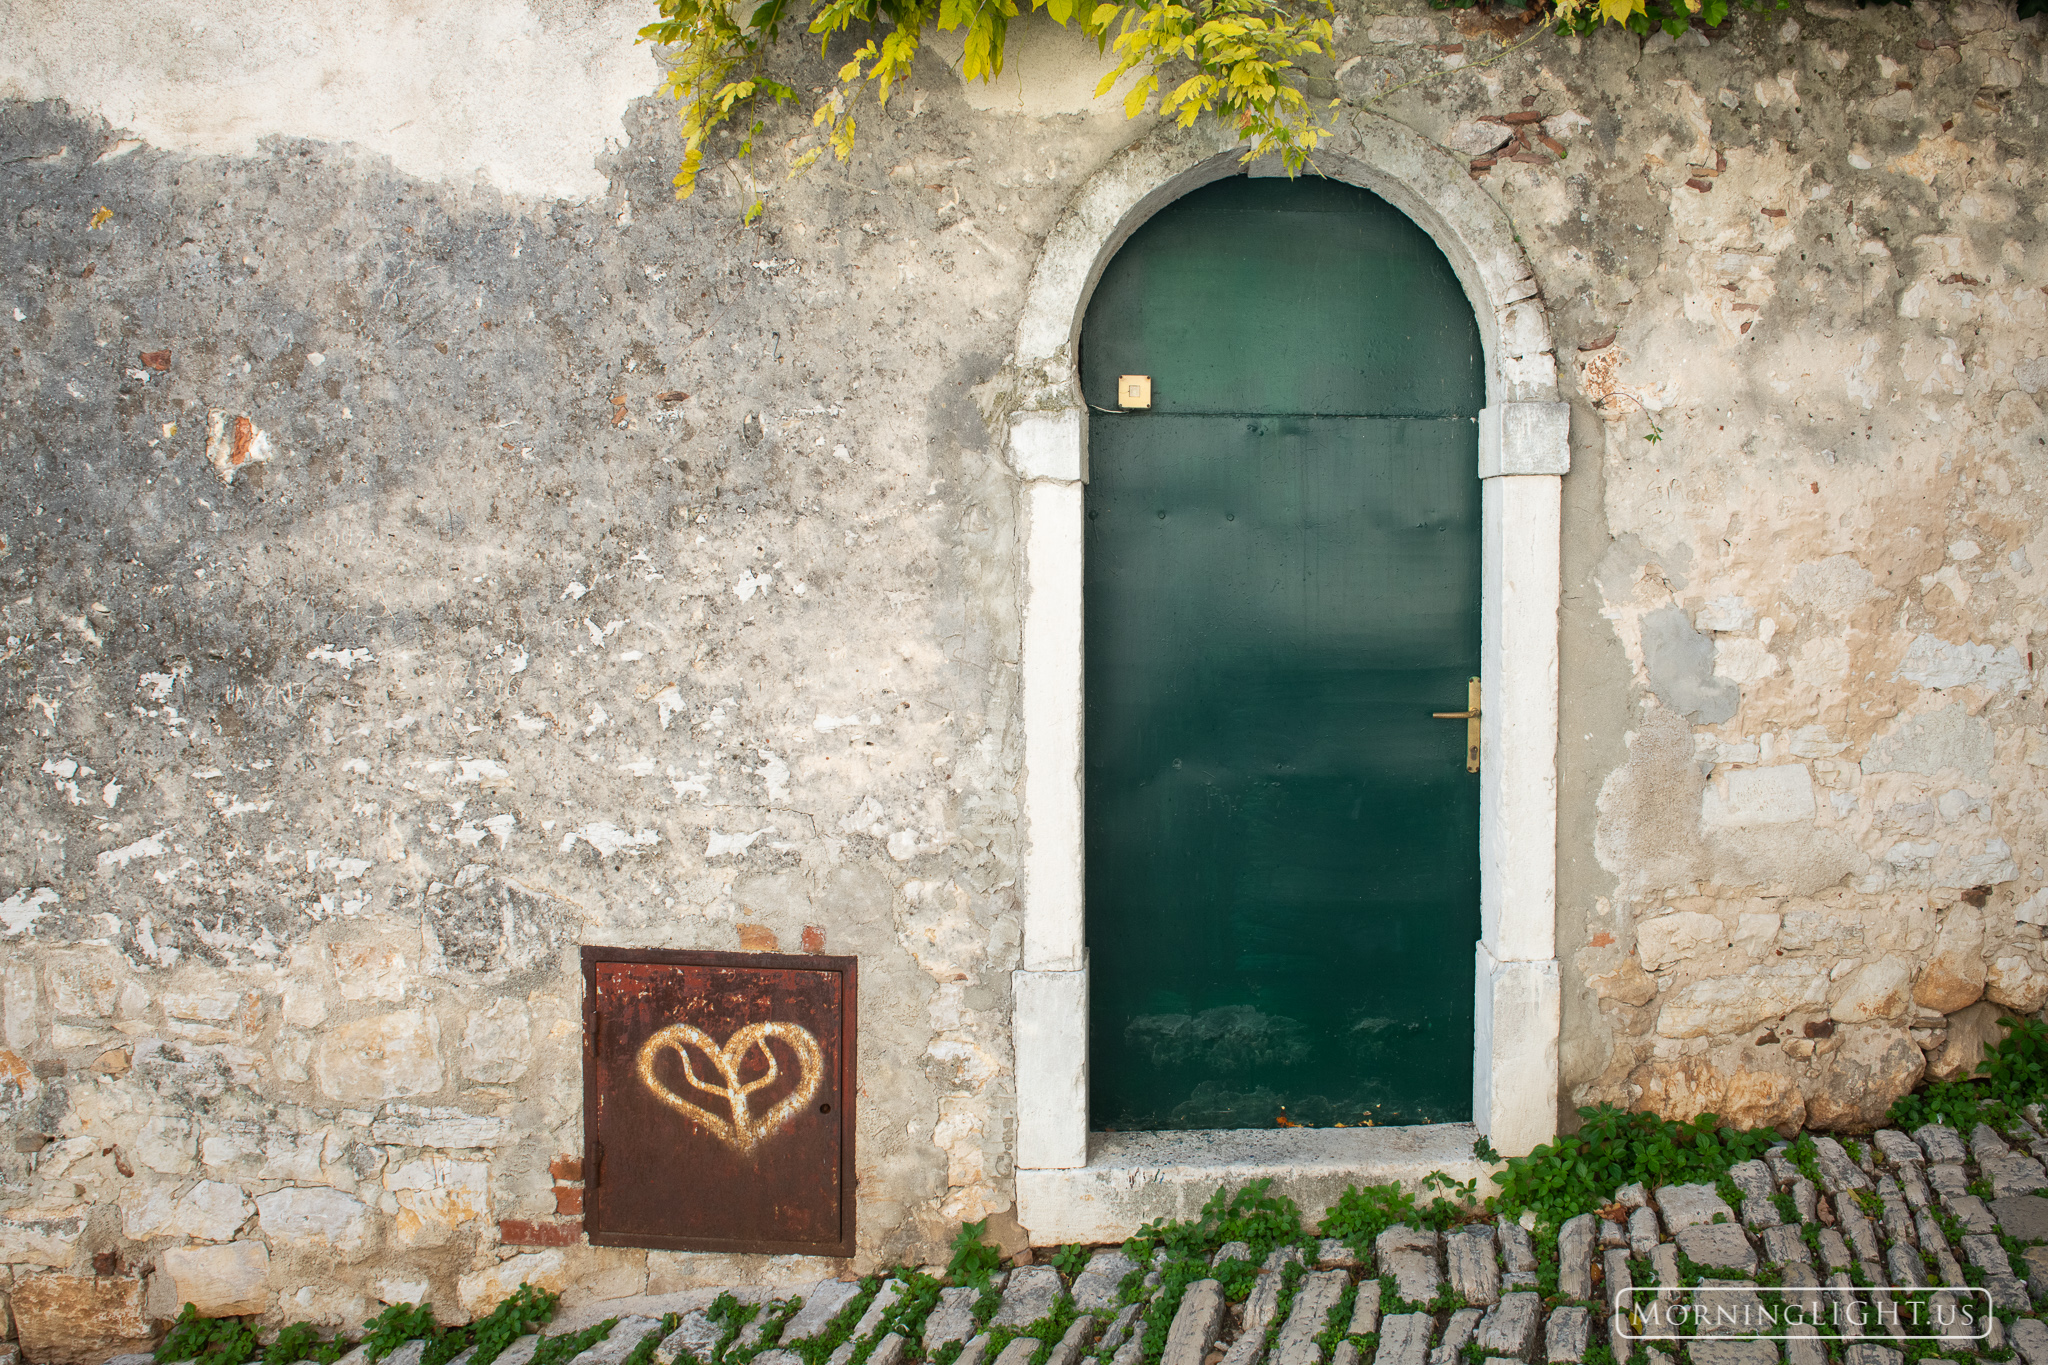 One of the many interesting doorways in Rovijn, Croatia